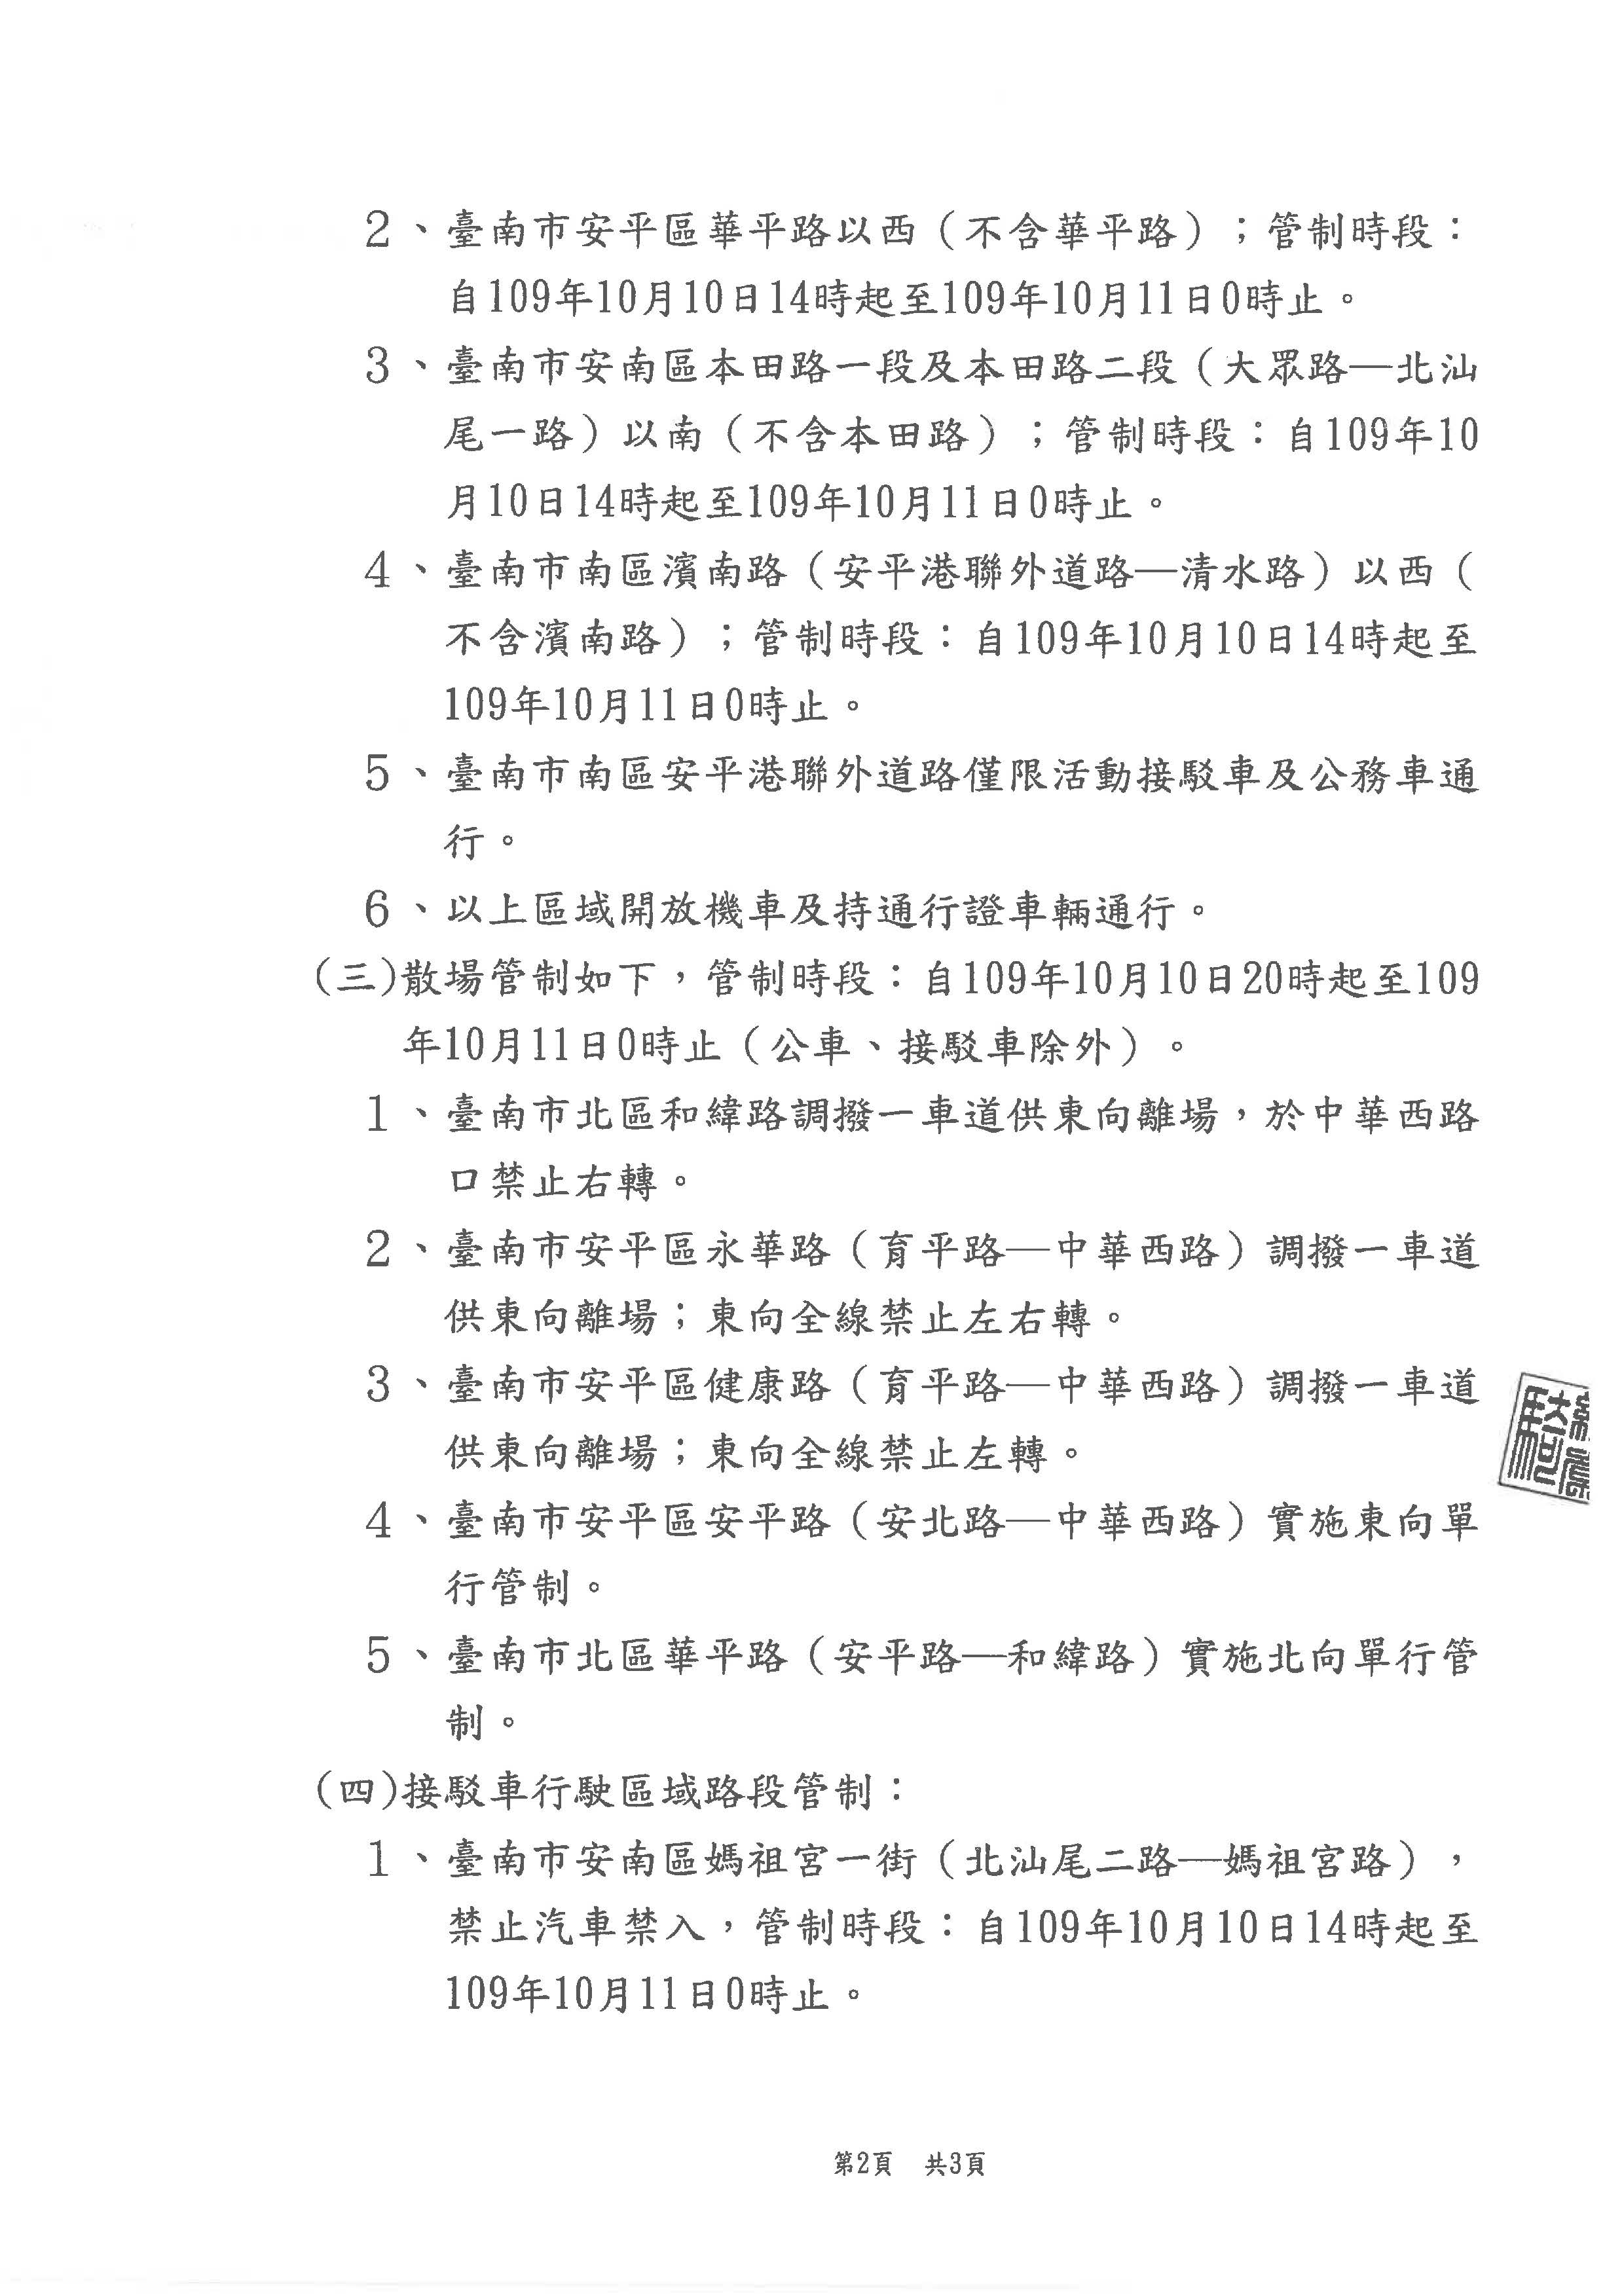 公告「2020國慶焰火在臺南」活動交通管制頁面2